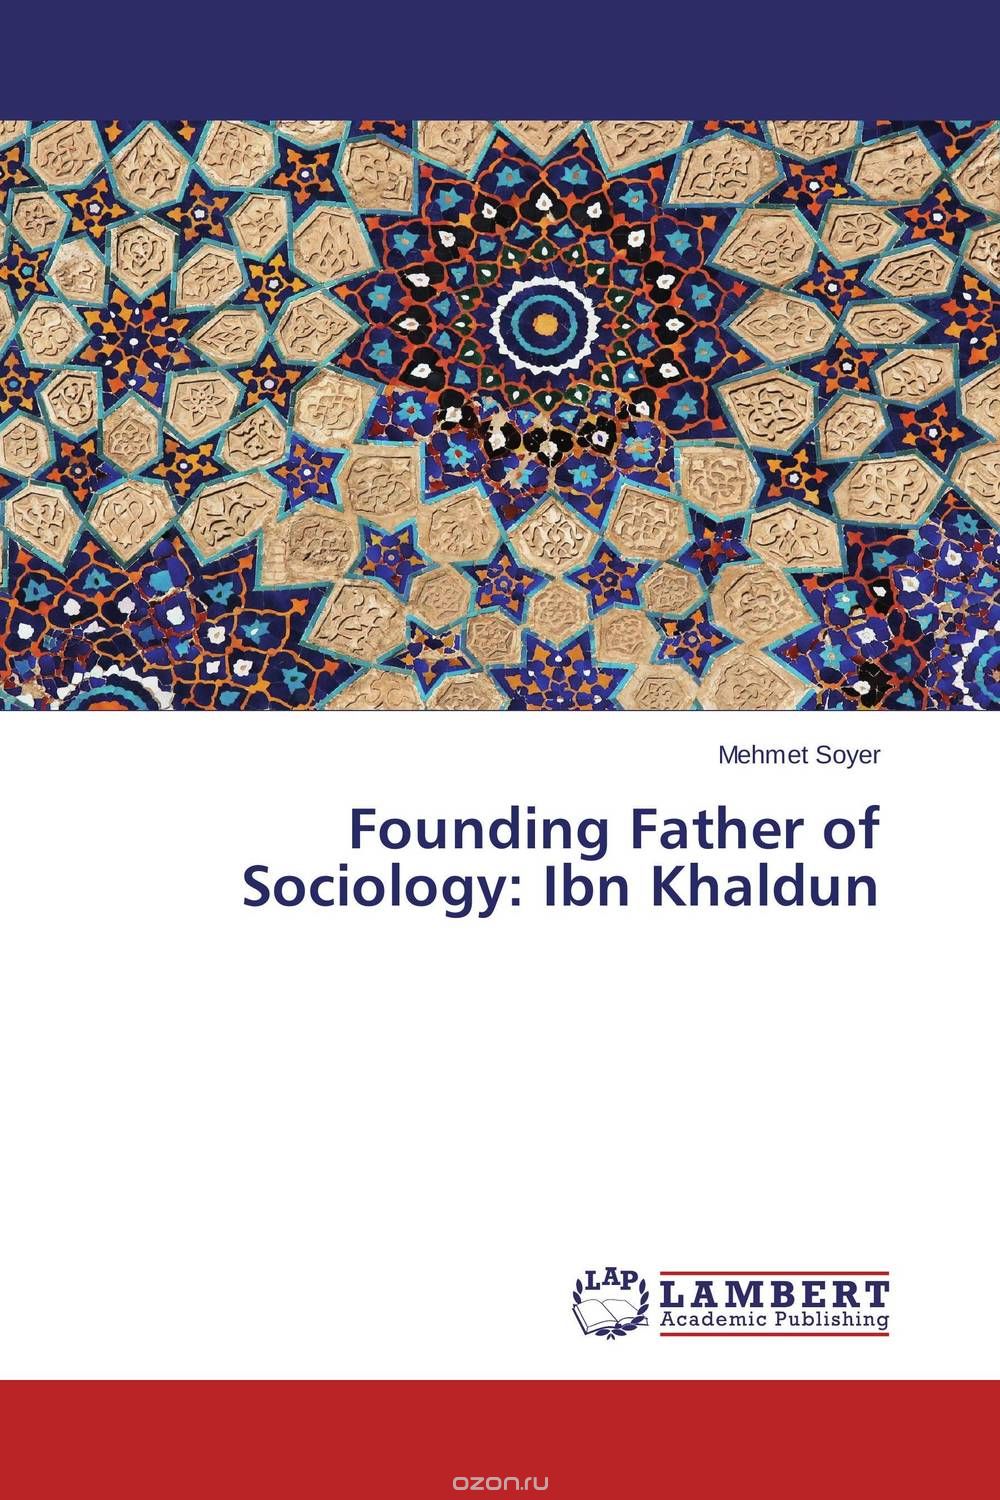 Скачать книгу "Founding Father of Sociology: Ibn Khaldun"